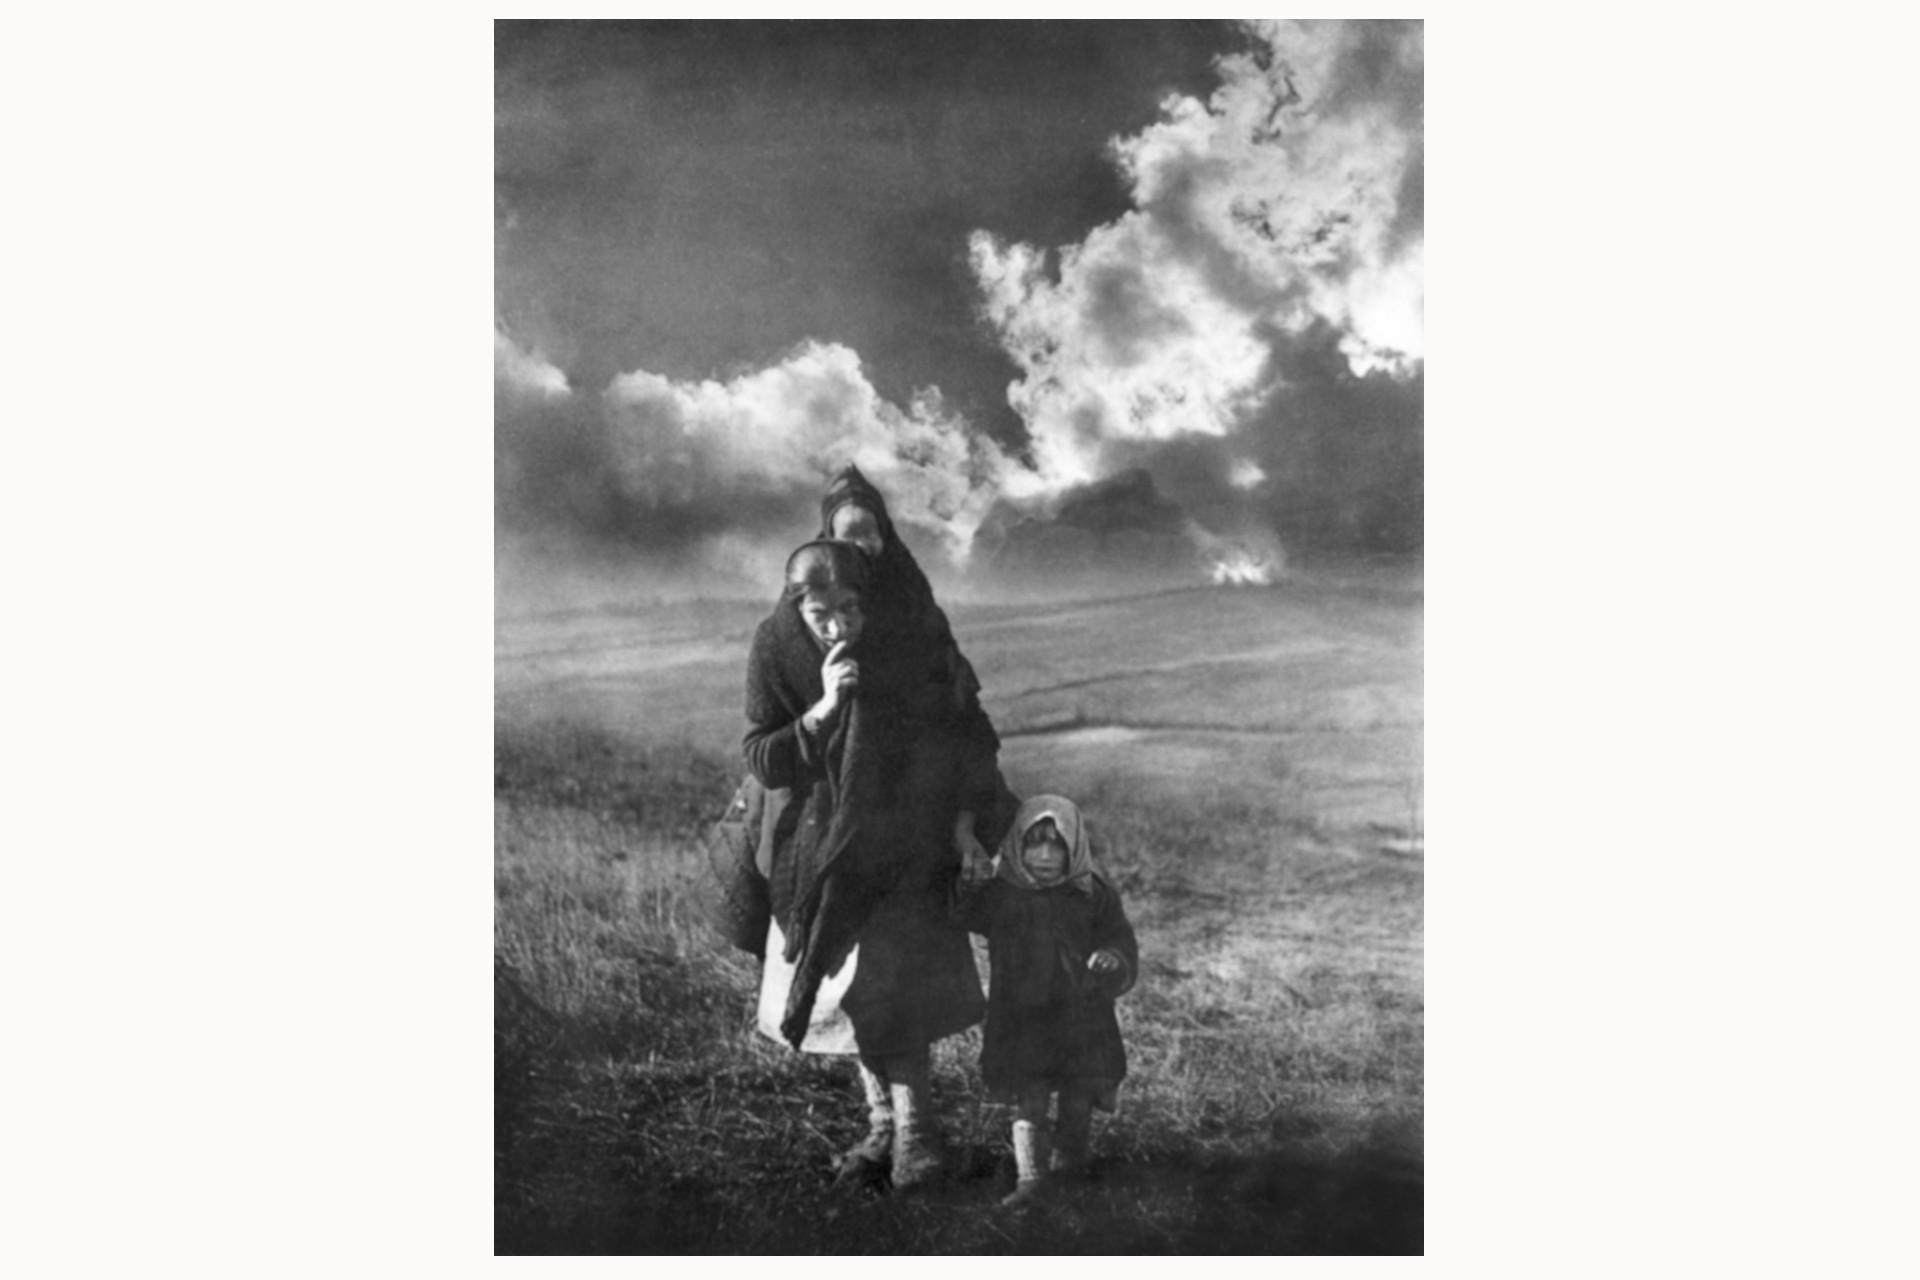 Mutter Knežopoljka. Fotografiert von Žorž Skrigin im Dorf Knežpolje, Kozara, Bosnien und Herzegowina, während der Sechsten-Feind-Offensive, Januar 1944. (Mit freundlicher Genehmigung des Museums der Geschichte Jugoslawiens, III-807). Dieses ikonische Foto wurde von Žorž Skrigin Ende 1943 aufgenommen. Es zeigt Milica Tepic, Mutter und Ehefrau des gefallenen Nationalhelden Branko Tepic, mit ihrem Sohn Branko und ihrer Tochter Dragica. Der kroatische Kunsthistoriker und Kurator Želimir Koščević verglich das Bild mit der bekannten Fotografie »Heimatlose Mutter« von Dorothea Lange aus dem Jahr 1936. Hinter der jungen Mutter und Witwe bricht die gleißende Wintersonne nur teilweise durch die dunklen Wolken, die Skrigin im Fotolabor nachträglich aufhellte, um den Kontrast und die Dramatik des abgebildeten Ereignisses zu unterstreichen. Die Bedingungen, unter denen dieses Foto entstand, sind mit denen der alliierten und deutschen Fotografen kaum vergleichbar. Dennoch schaffte Skrigin eine Fotografie, die mit der Zeit an Wert gewann. Sie zählt zu den bekanntesten Arbeiten Skrigins. Die Umsetzung von in der Kunstgeschichte anerkannten Elementen zeugt von Skrigins umfassenden fotografischen Erfahrungen aus der Vorkriegszeit. Diese Fotografie ist ein treffendes Beispiel dafür, wie durch die Fotografie Botschaften und Inhalte verbreitet werden können – in diesem Fall das Leid der Zivilbevölkerung, die Schrecken des Krieges, aber auch die heroischen Leistungen, die durch die stereotype Figur der Mutter symbolisiert werden.